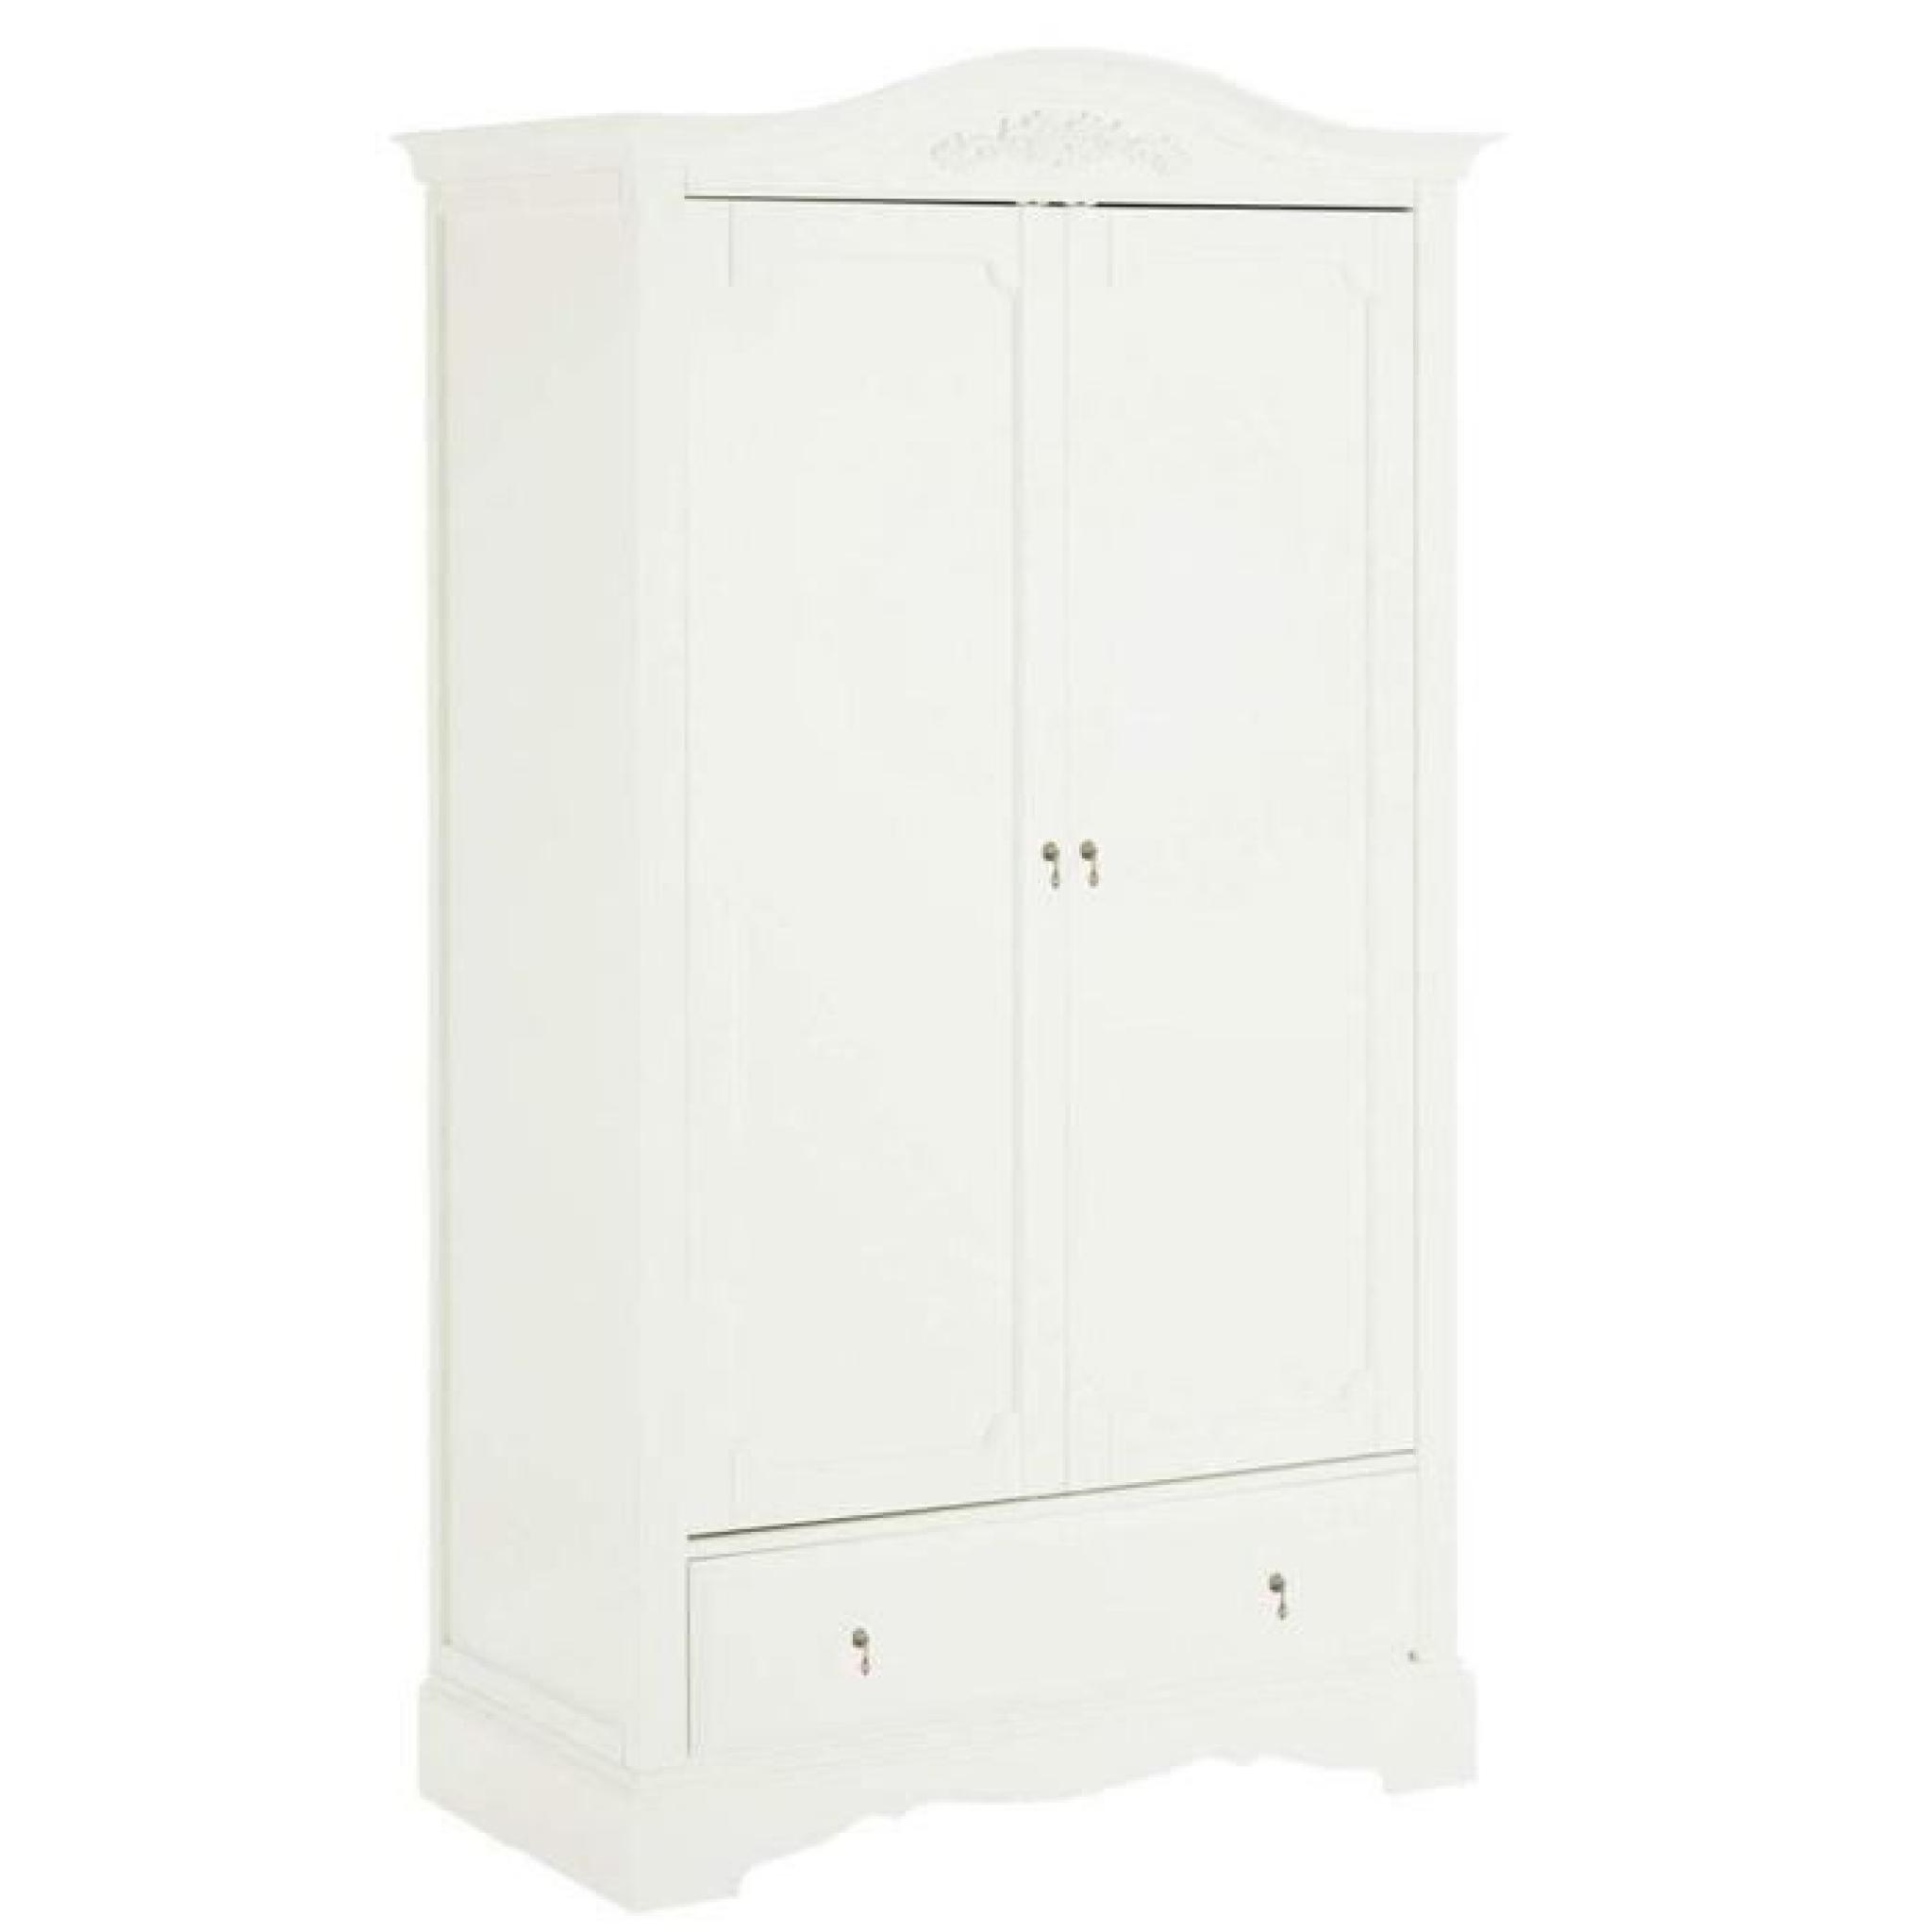 Armoire en bois coloris blanc  - Dim : H 205 x L 117 x P 63 cm